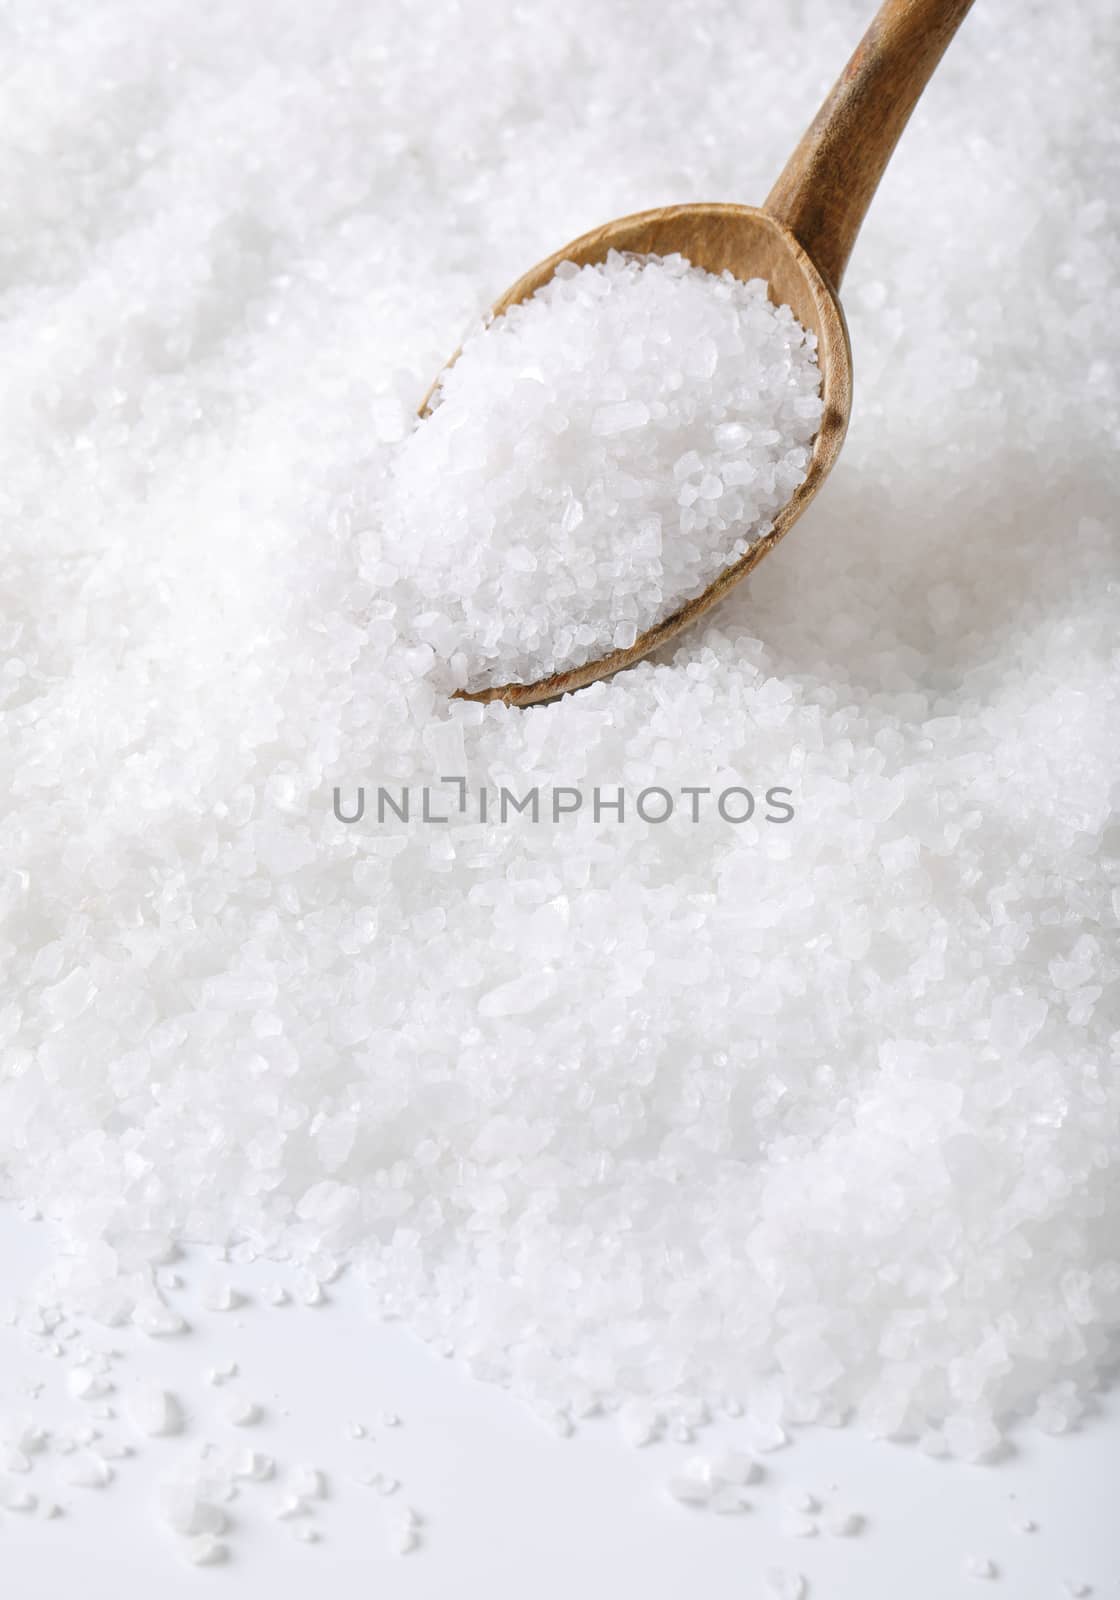 coarse grained sea salt on a wooden spoon